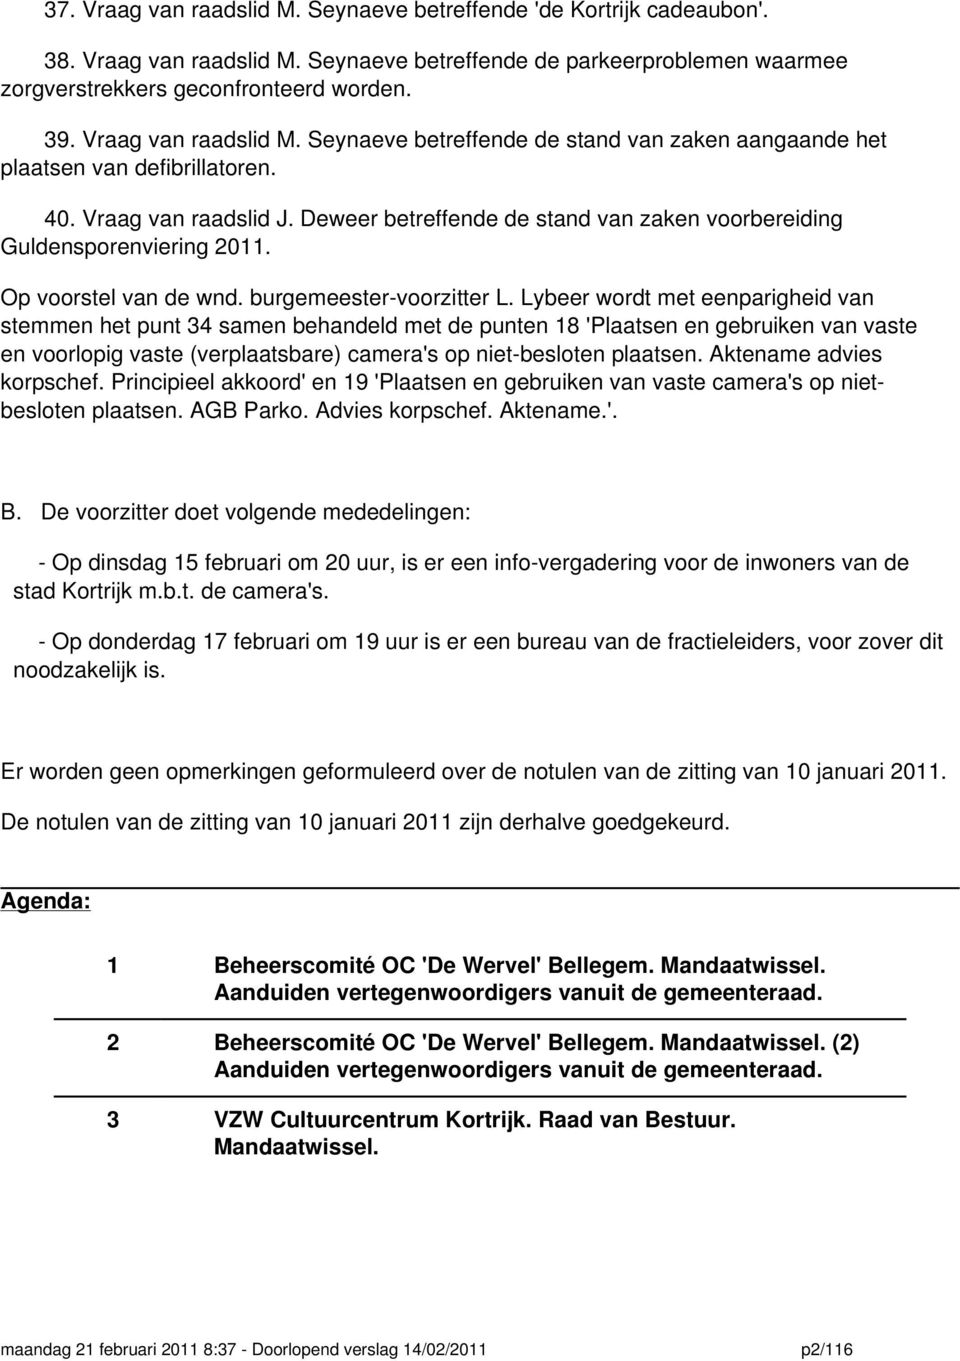 Deweer betreffende de stand van zaken voorbereiding Guldensporenviering 2011. Op voorstel van de wnd. burgemeester-voorzitter L.